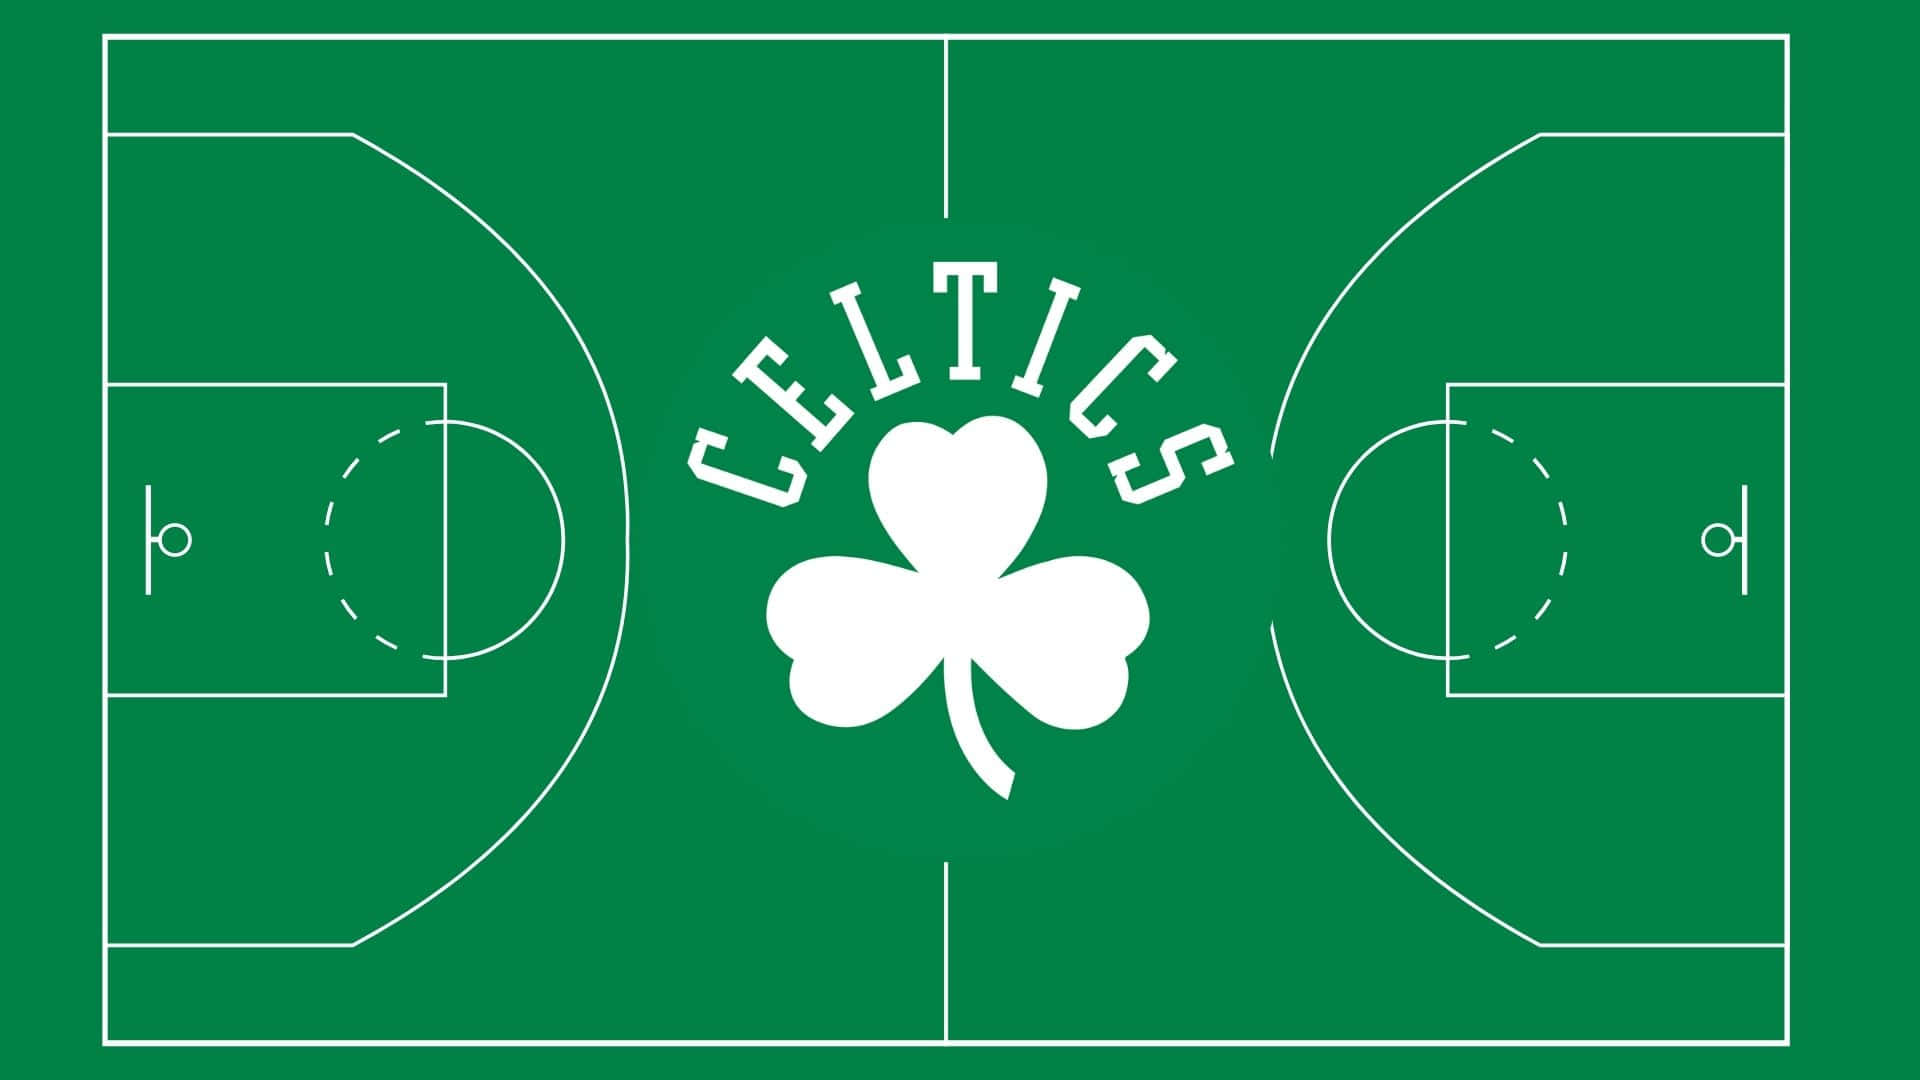 Iboston Celtics Si Uniscono Come Uno Per Conquistare La Loro Prossima Vittoria. Sfondo